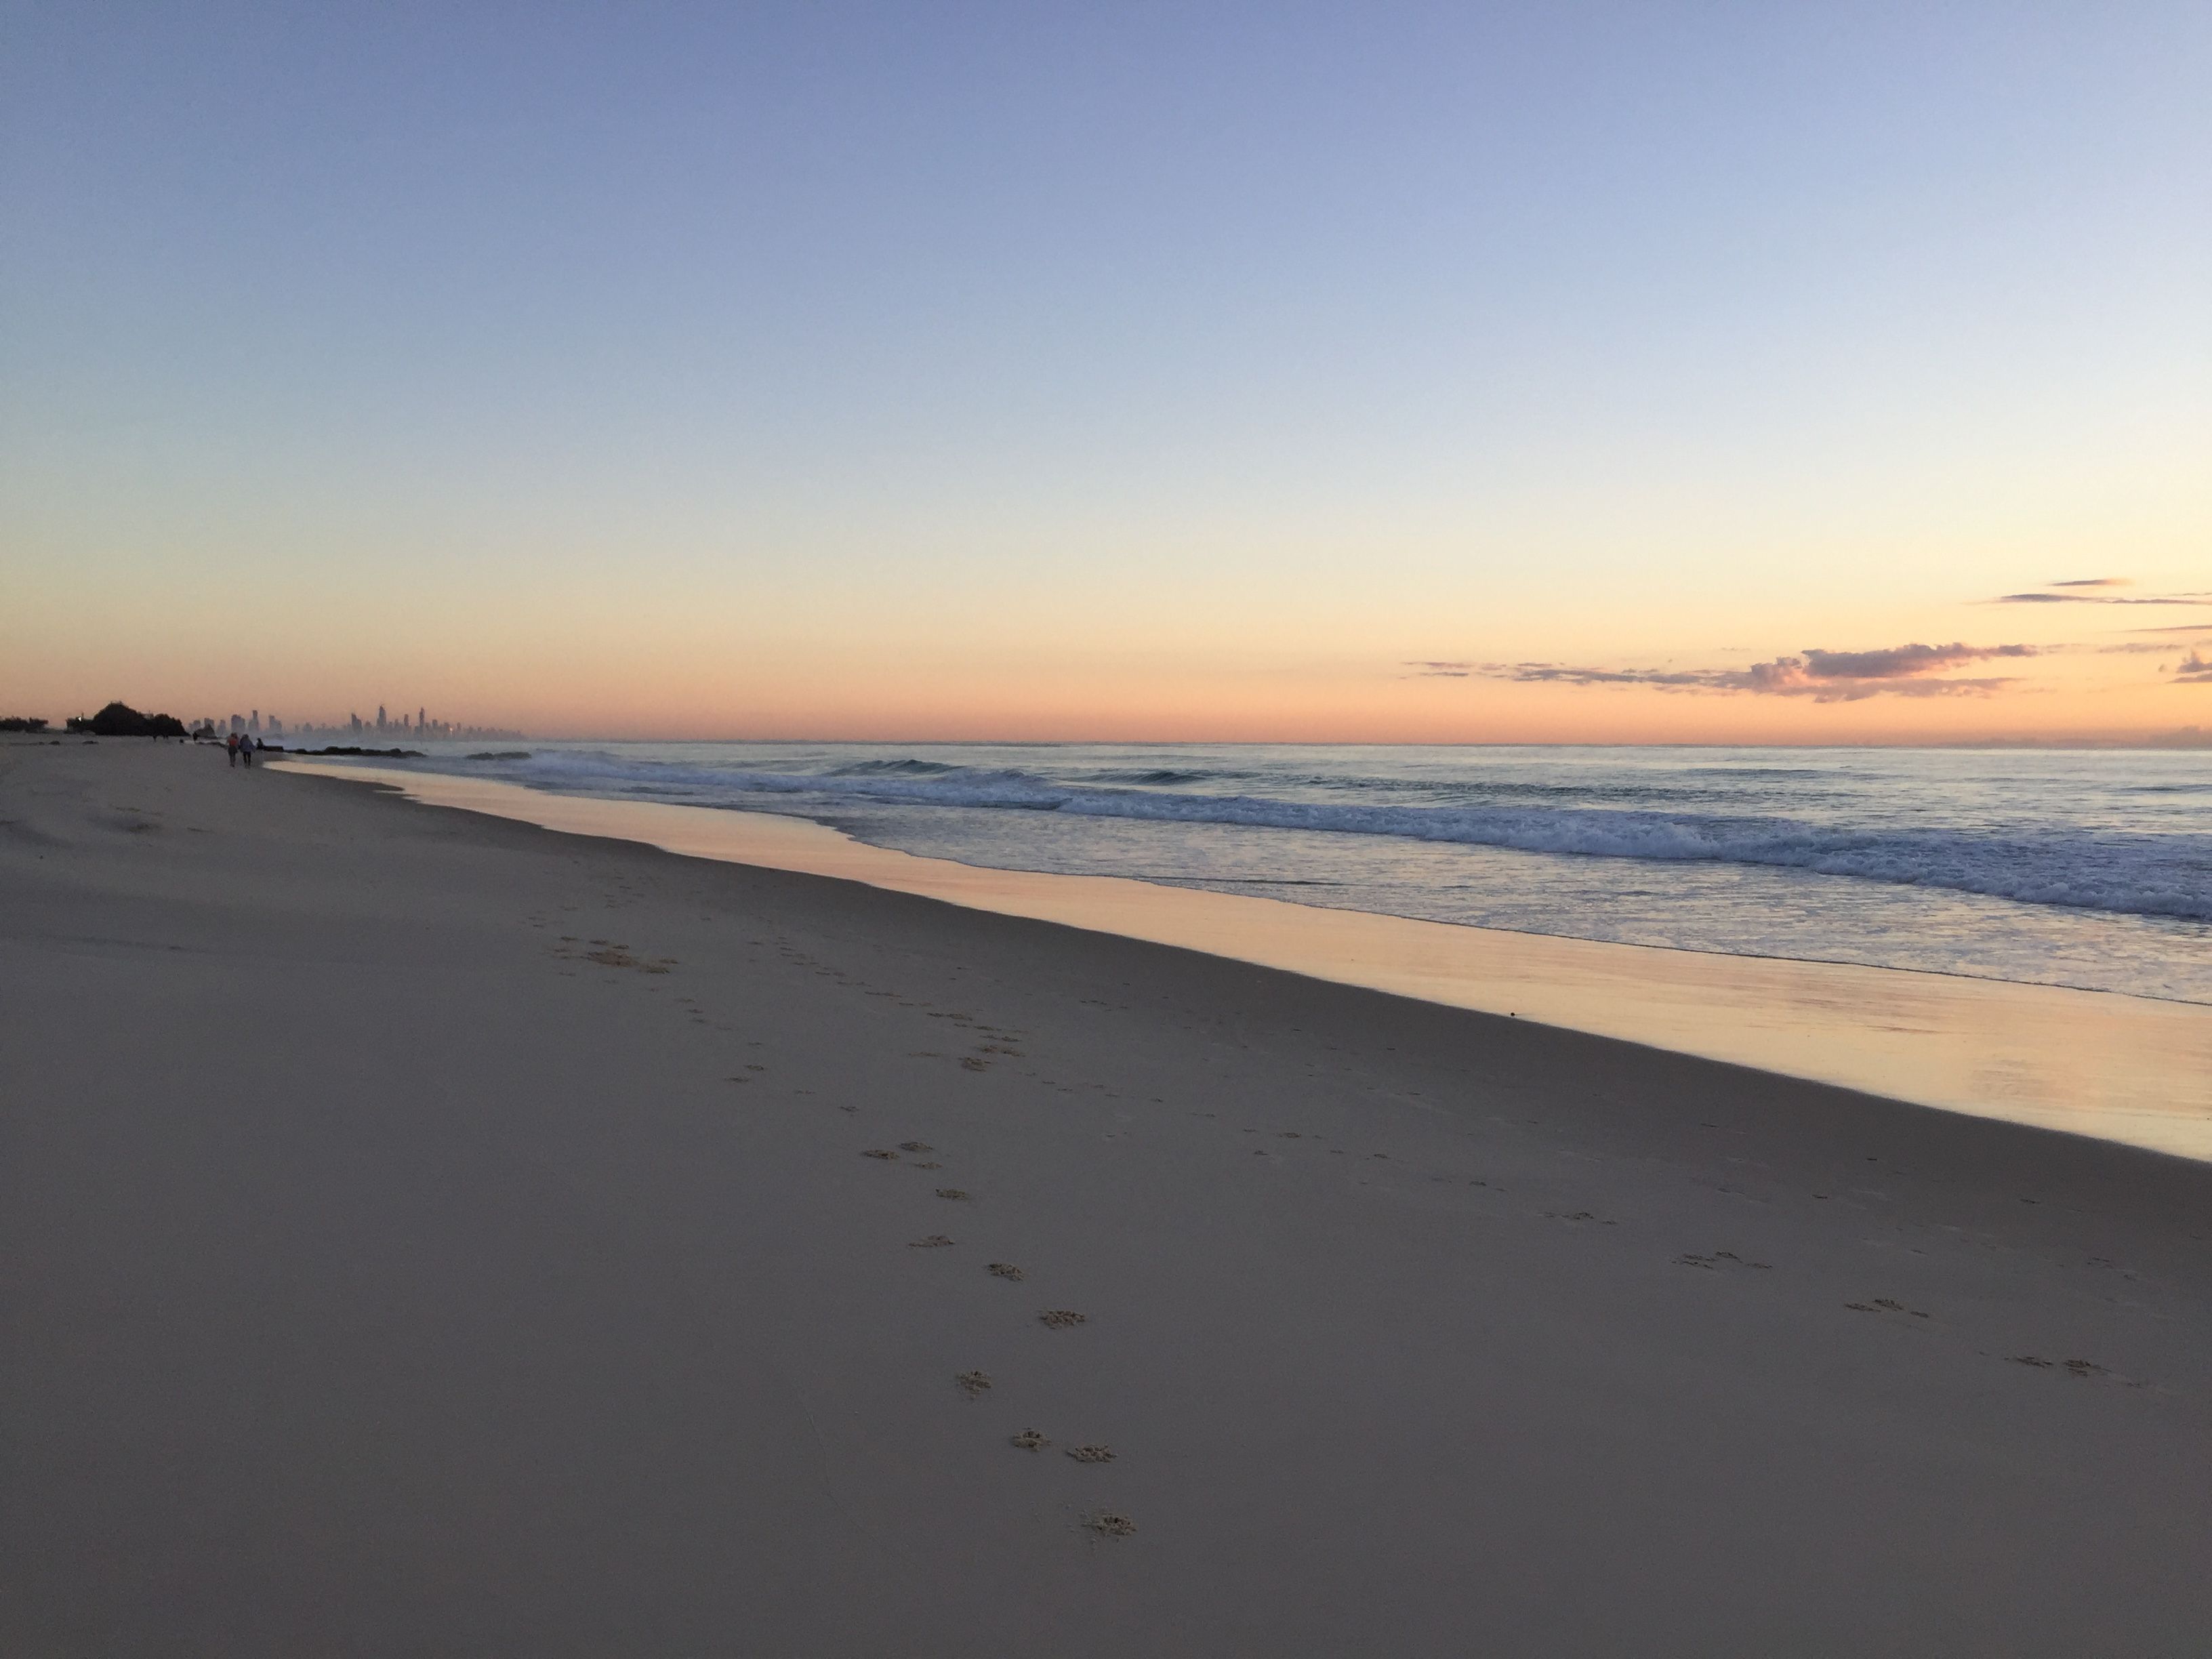 Sunset on a beach in Australia.